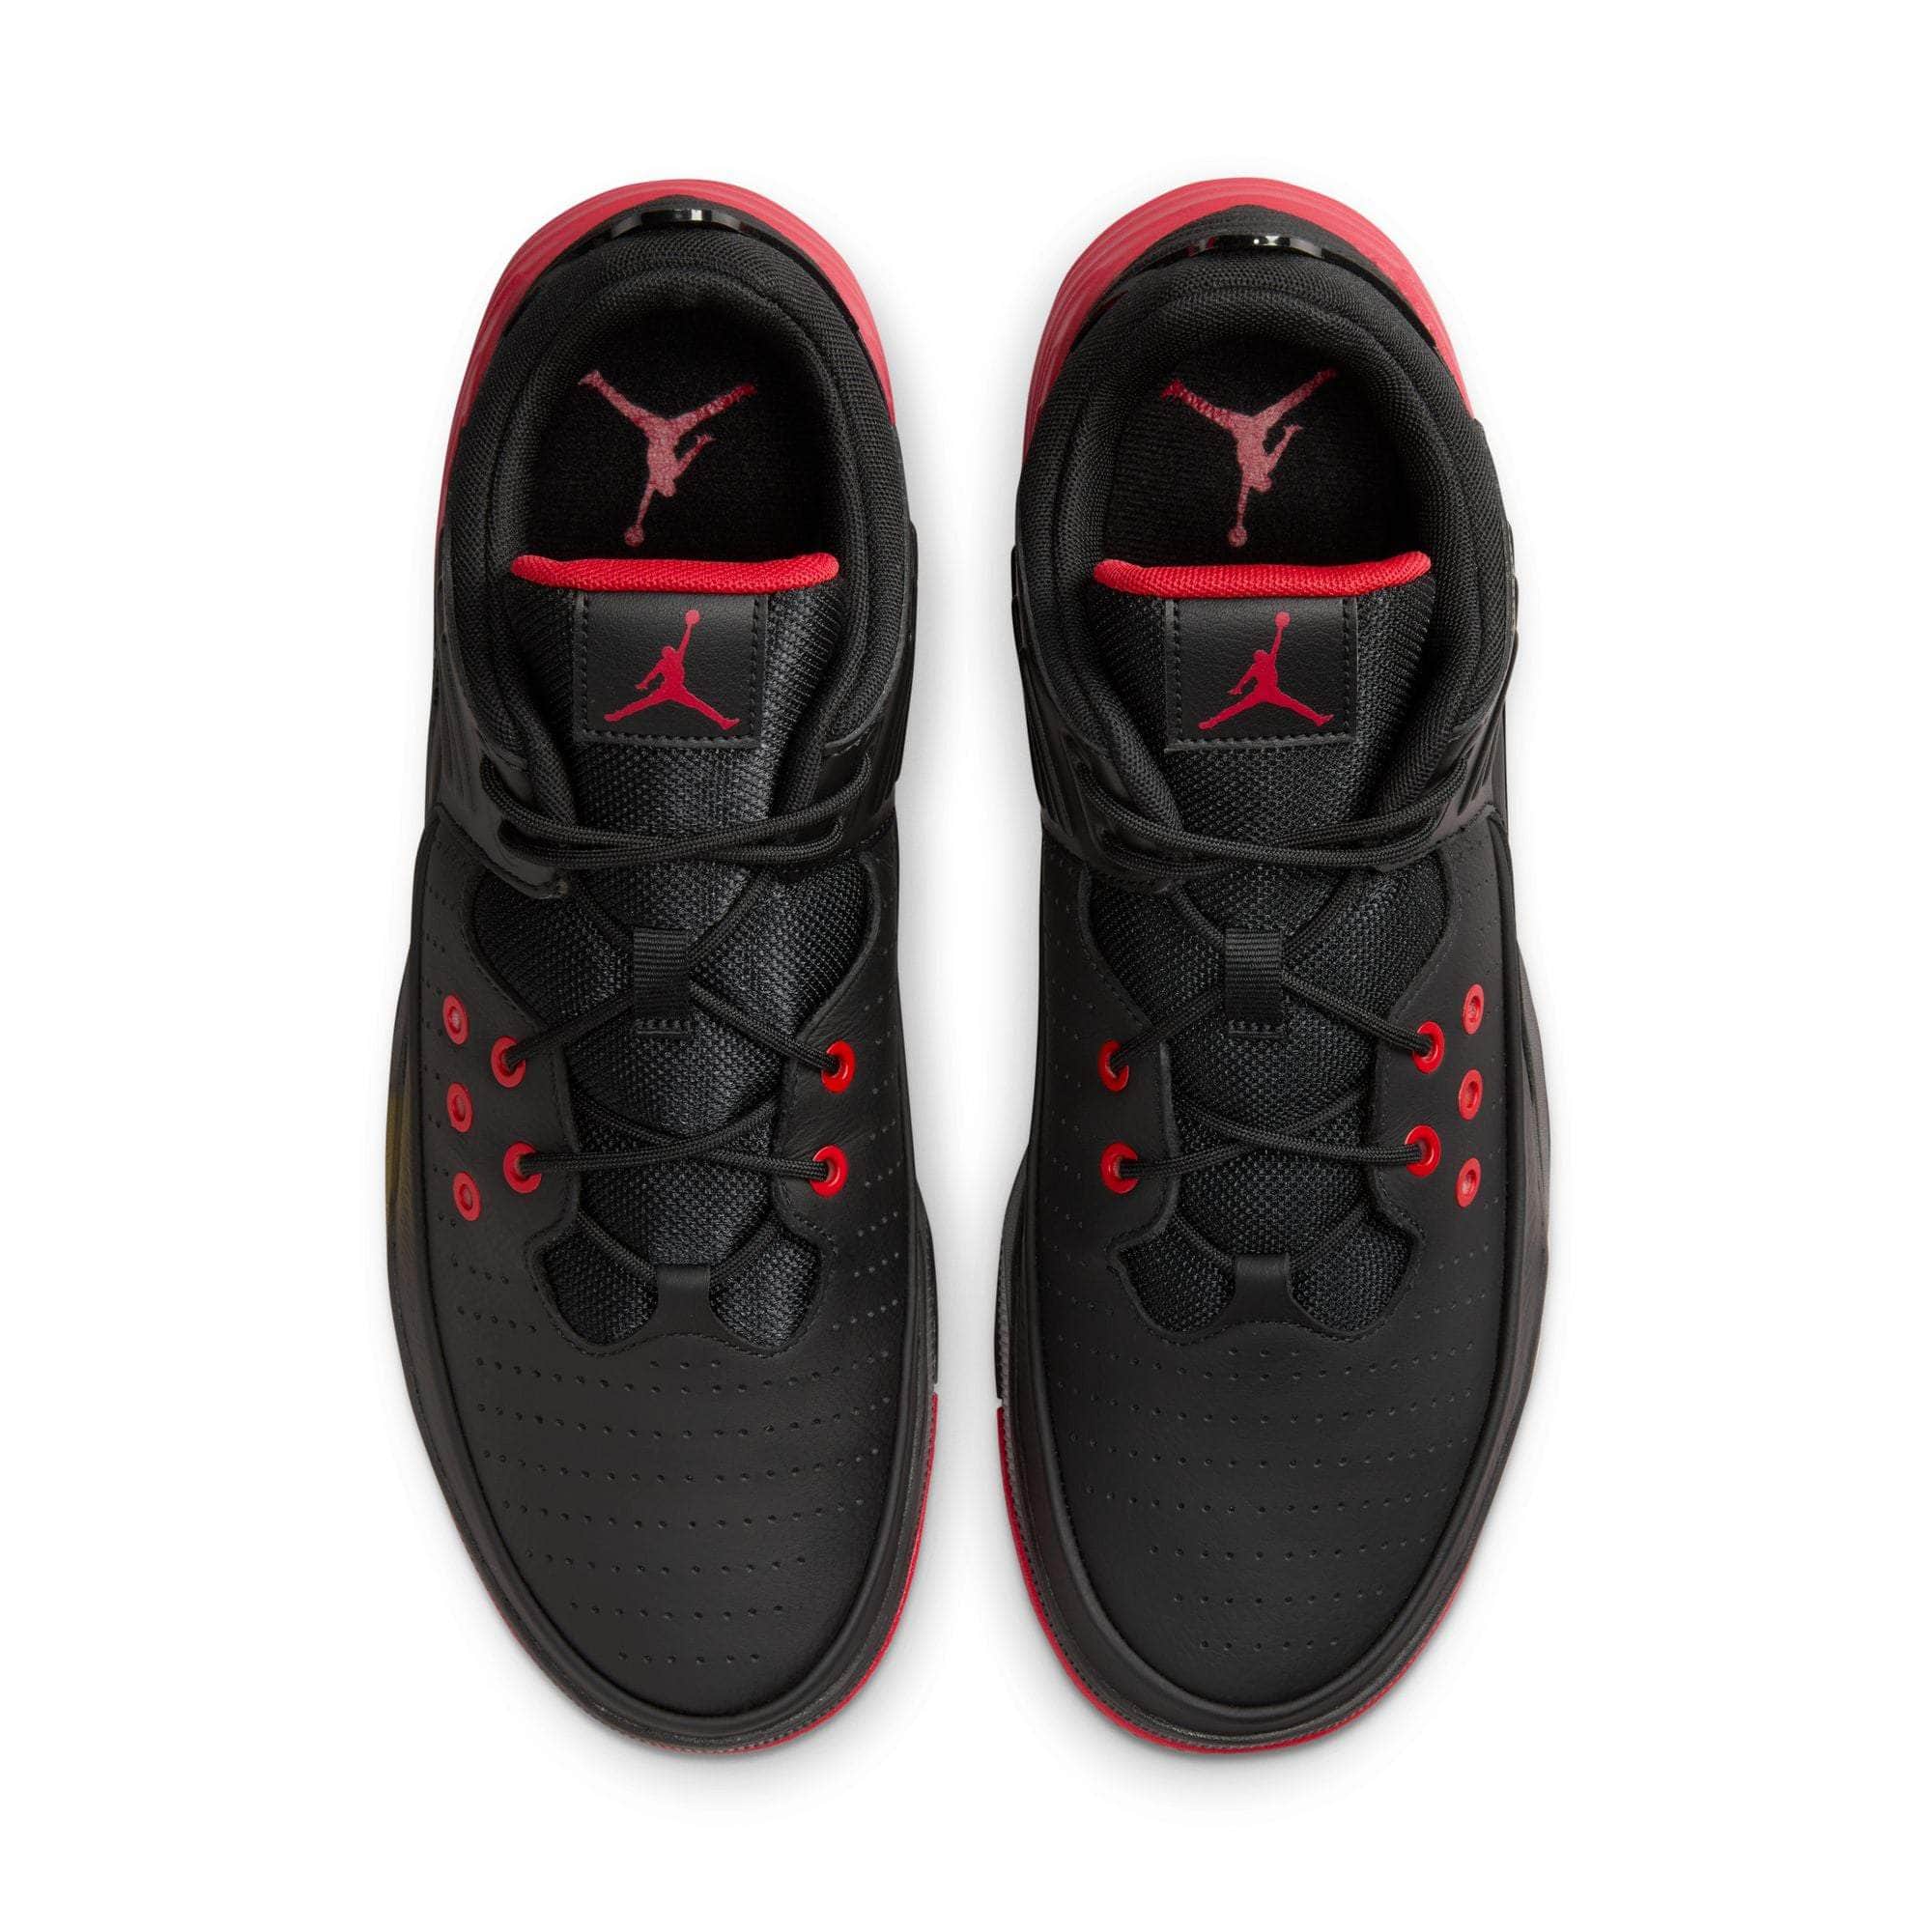 Air Jordan FOOTWEAR Air Jordan Max Aura 5 "Black/University Red-Black" - Men's